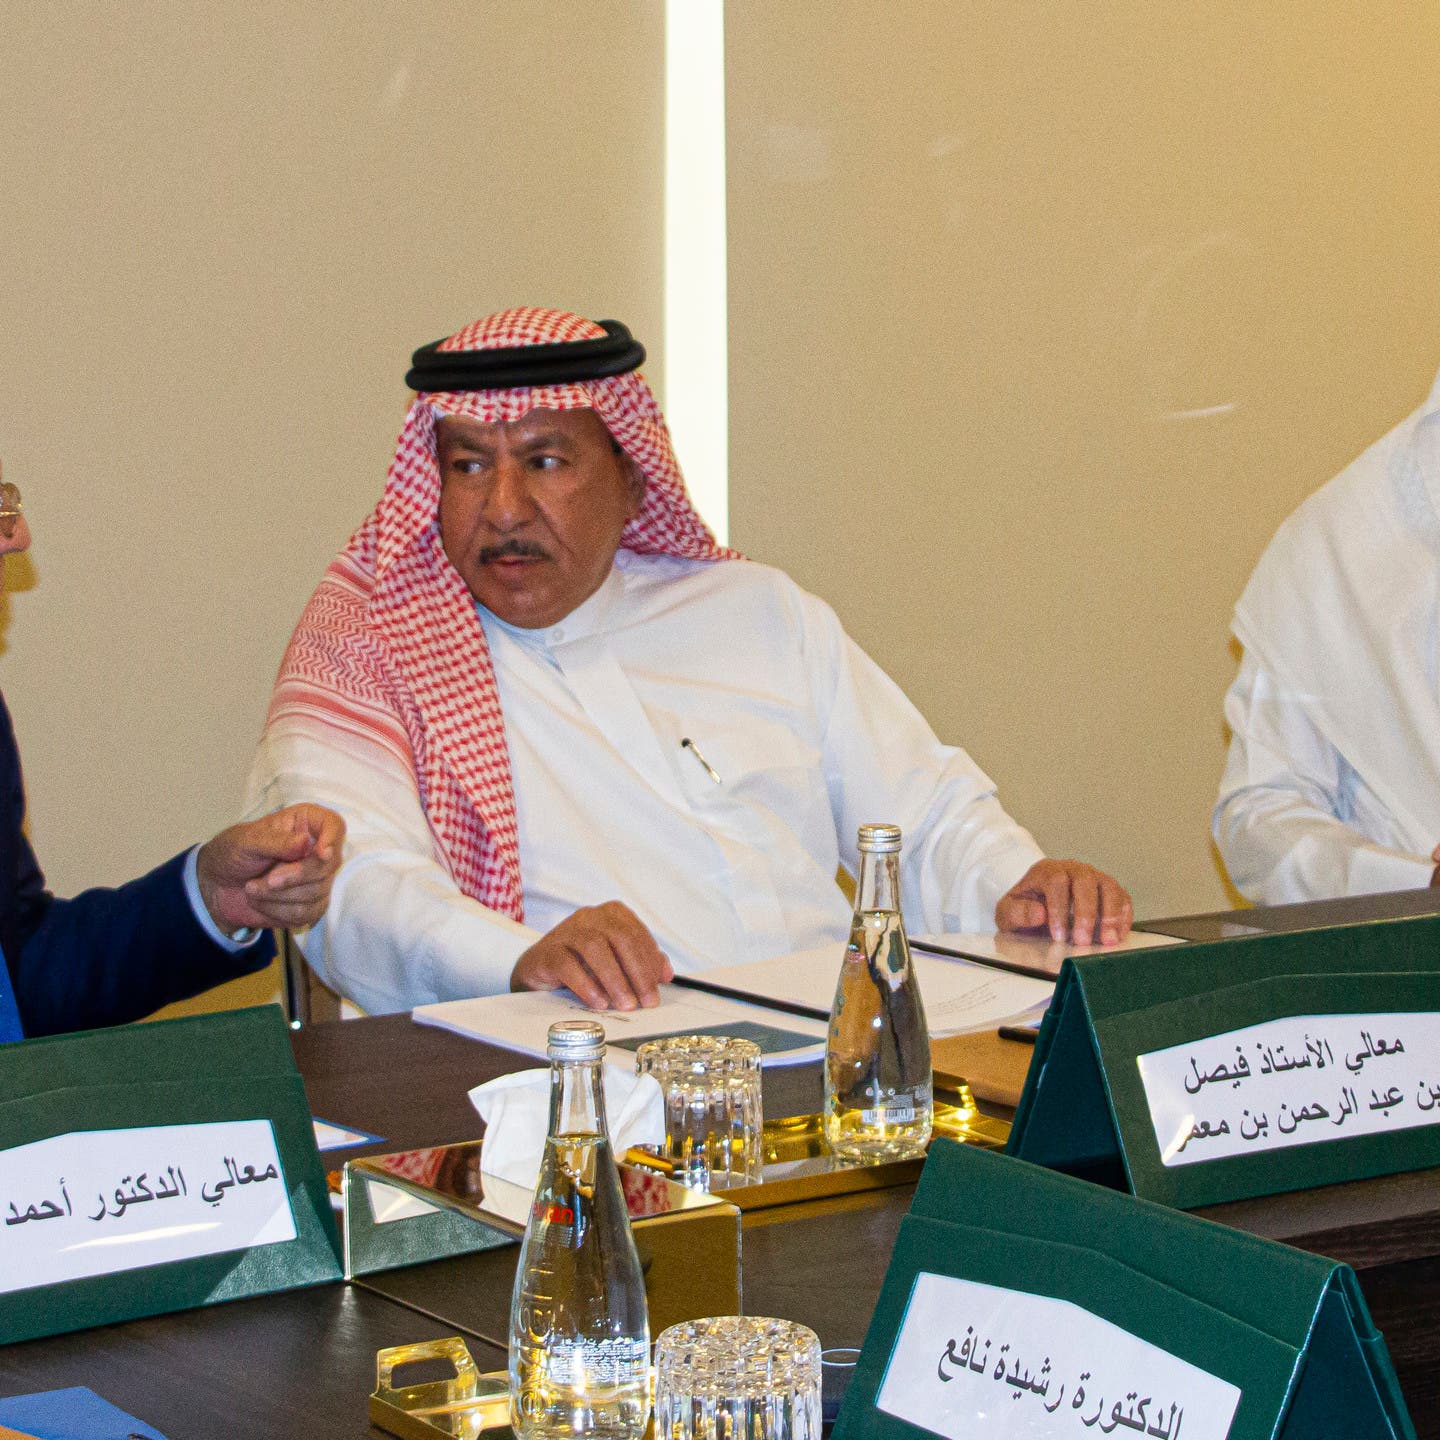 مؤسسة الملك عبدالعزيز للدراسات الإسلامية تعزز علاقتها مع الباحثين